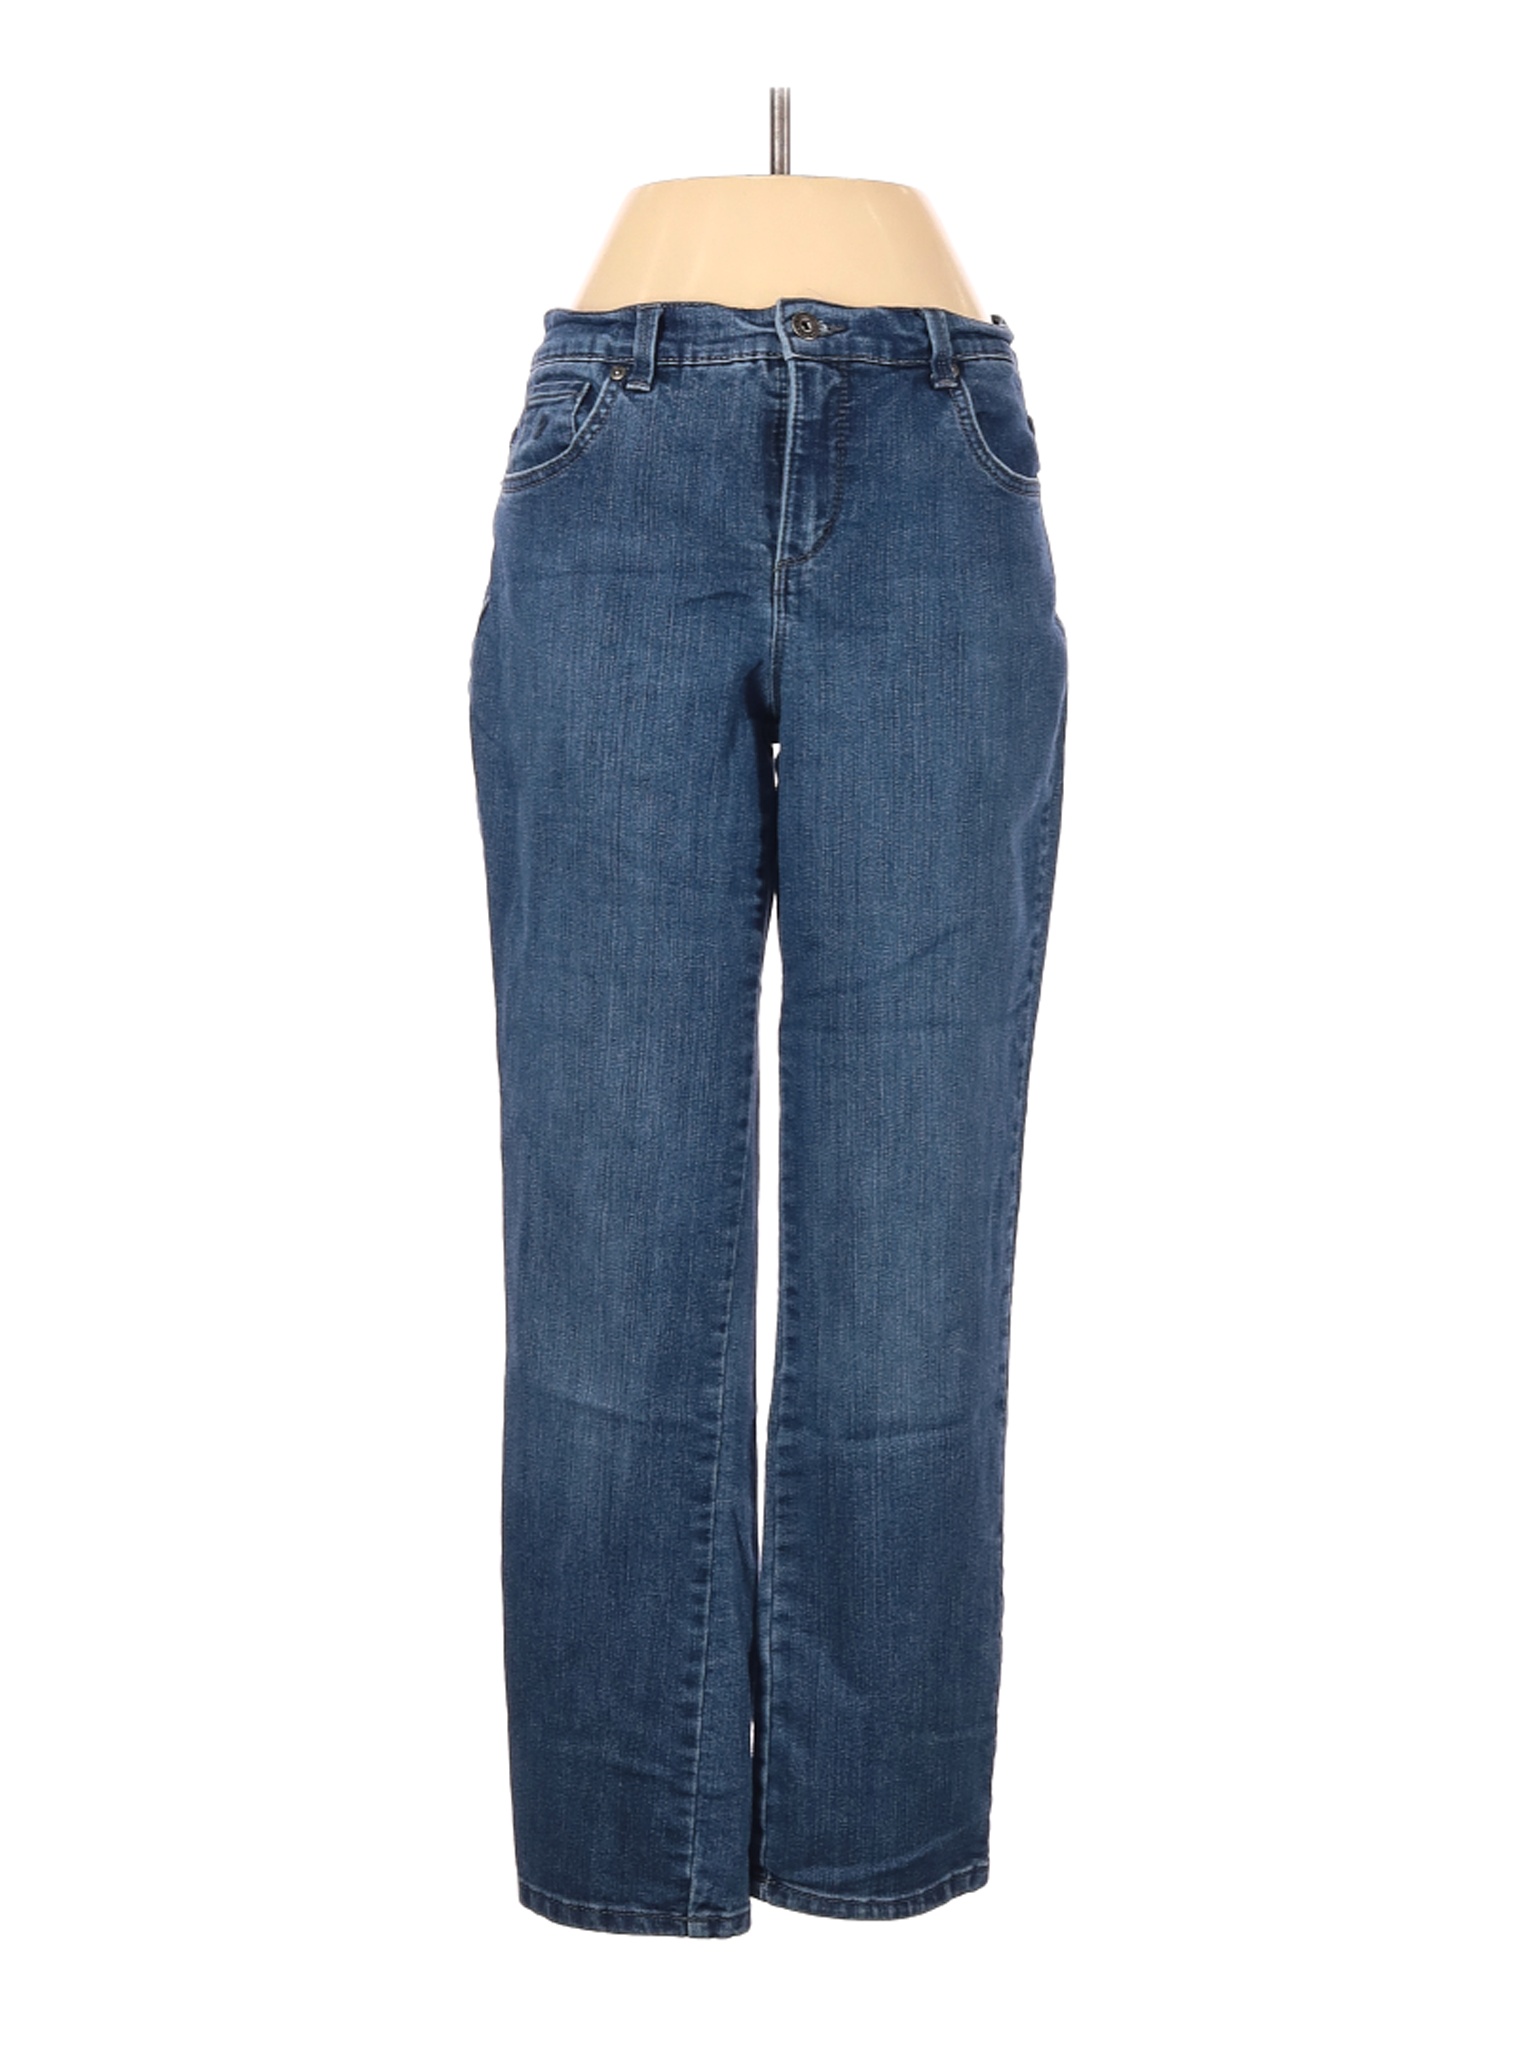 Gloria Vanderbilt Women Blue Jeans 2 | eBay